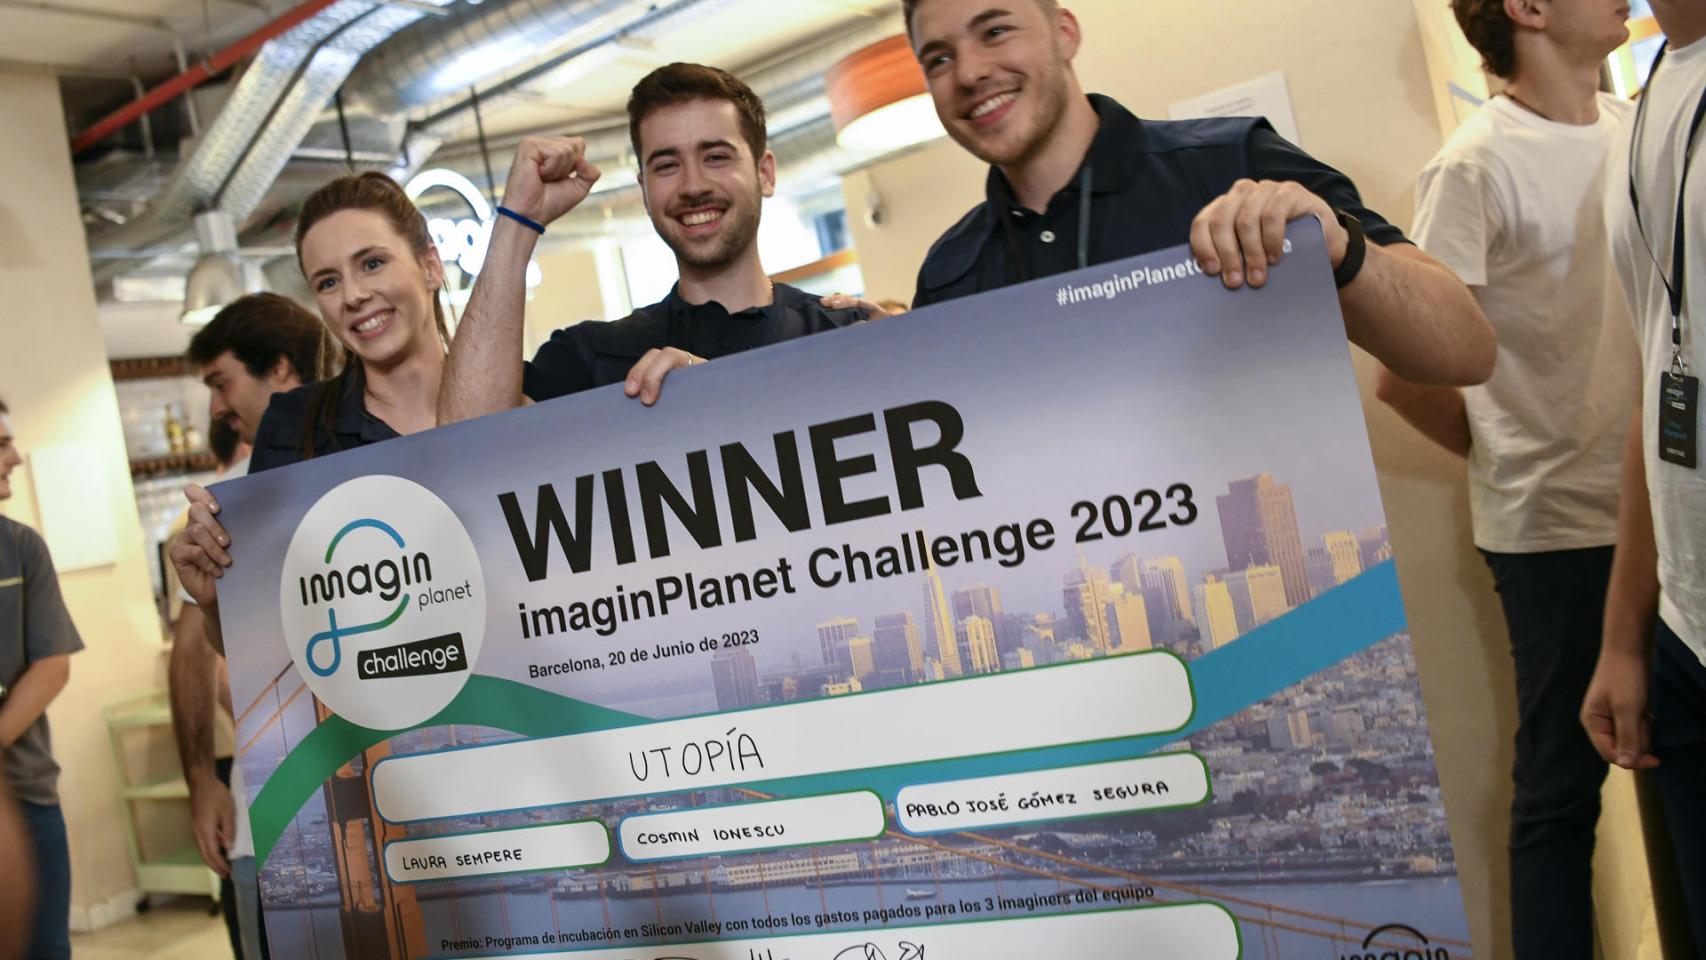 Los emprendedores Laura Sempere Agulló (i), Pablo José Gómez Segura (c) y Cosmin Ionescu (d) posan como ganadores del imaginPlanet Challengue 2023.